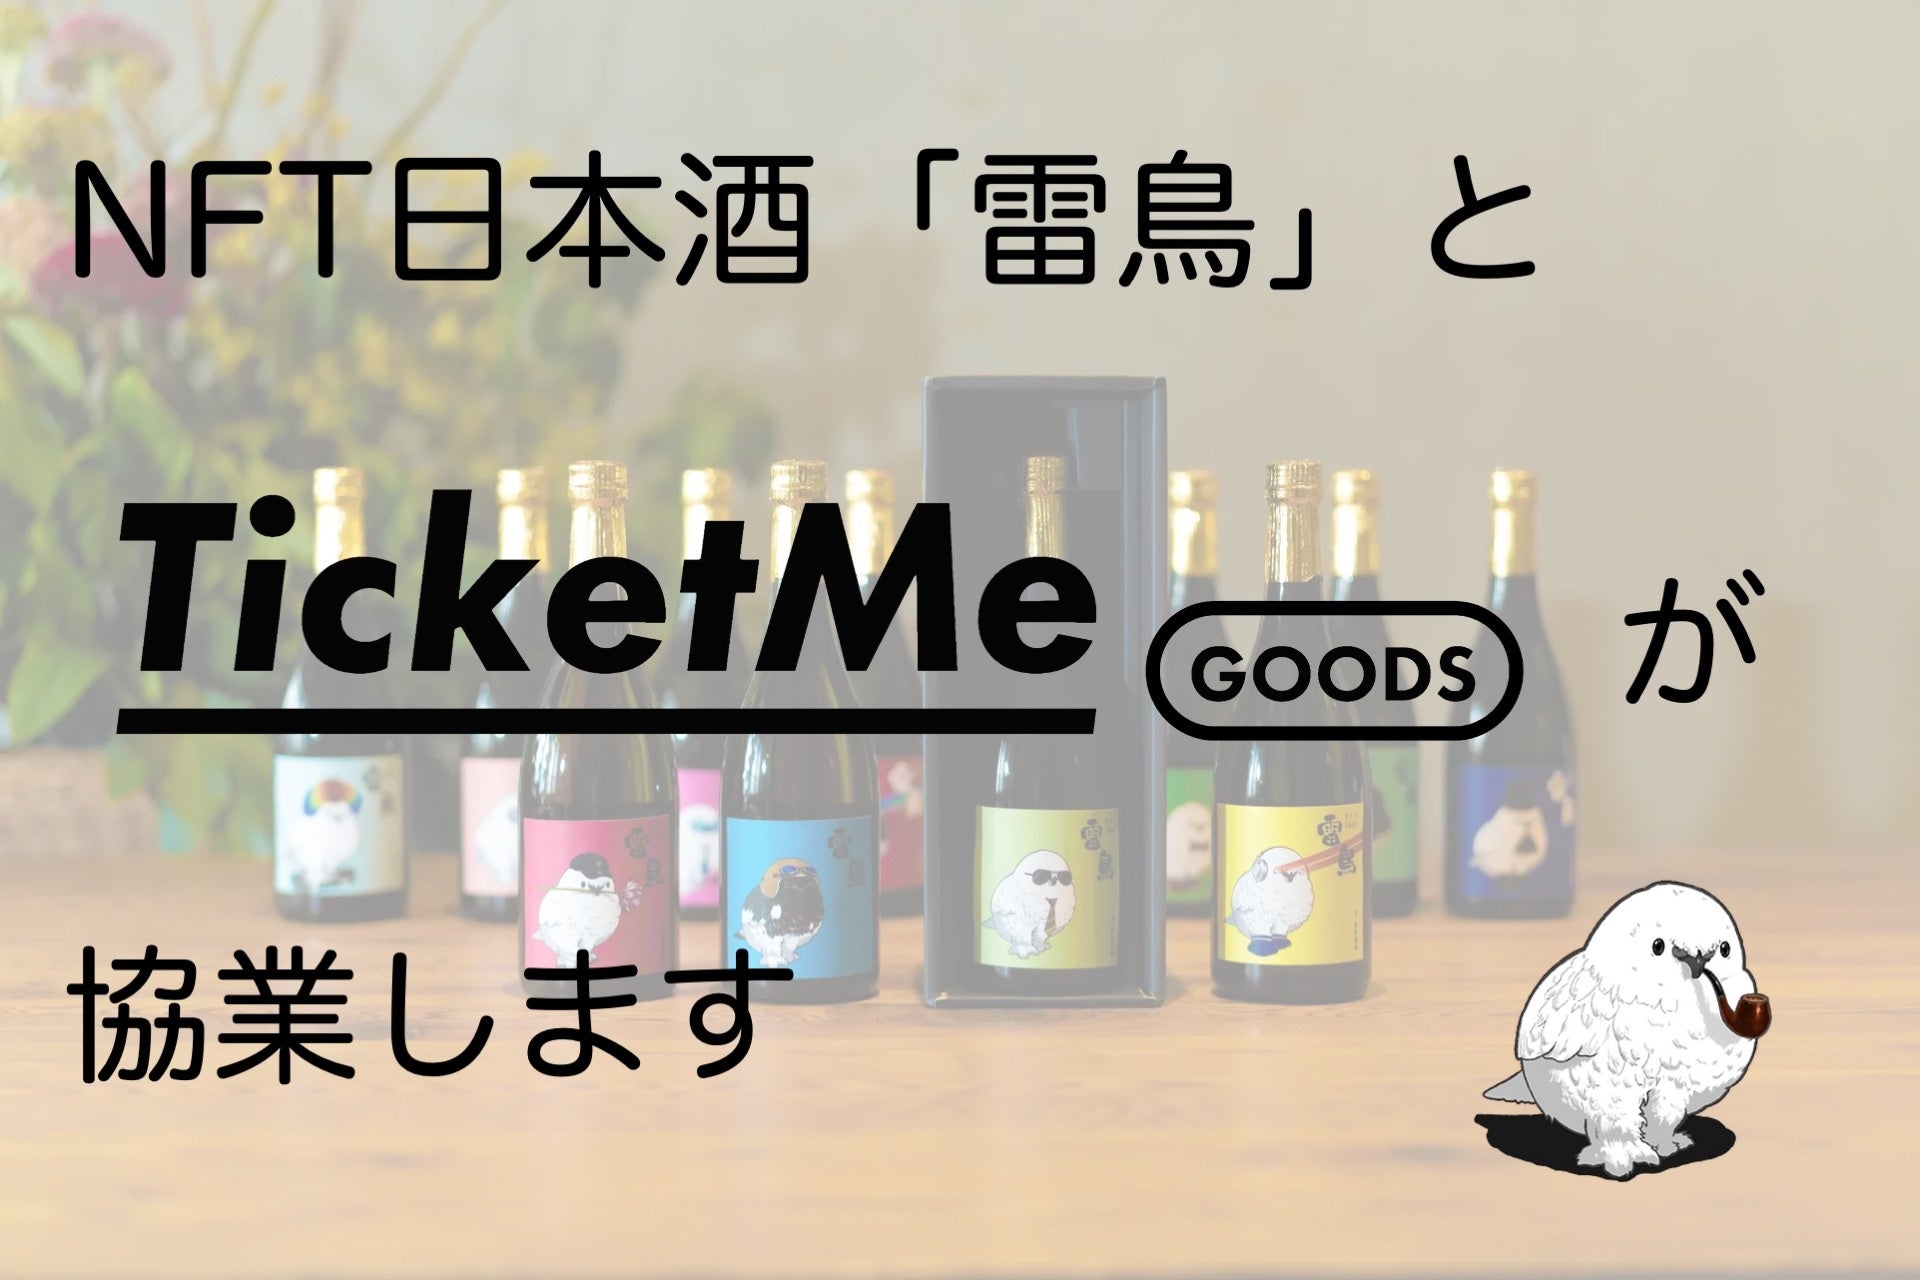 【協業】NFT日本酒「雷鳥」と日本初のNFT引換券販売プラットフォーム「TicketMe Goods」を提供するチケミー社が協業を開始のサブ画像1